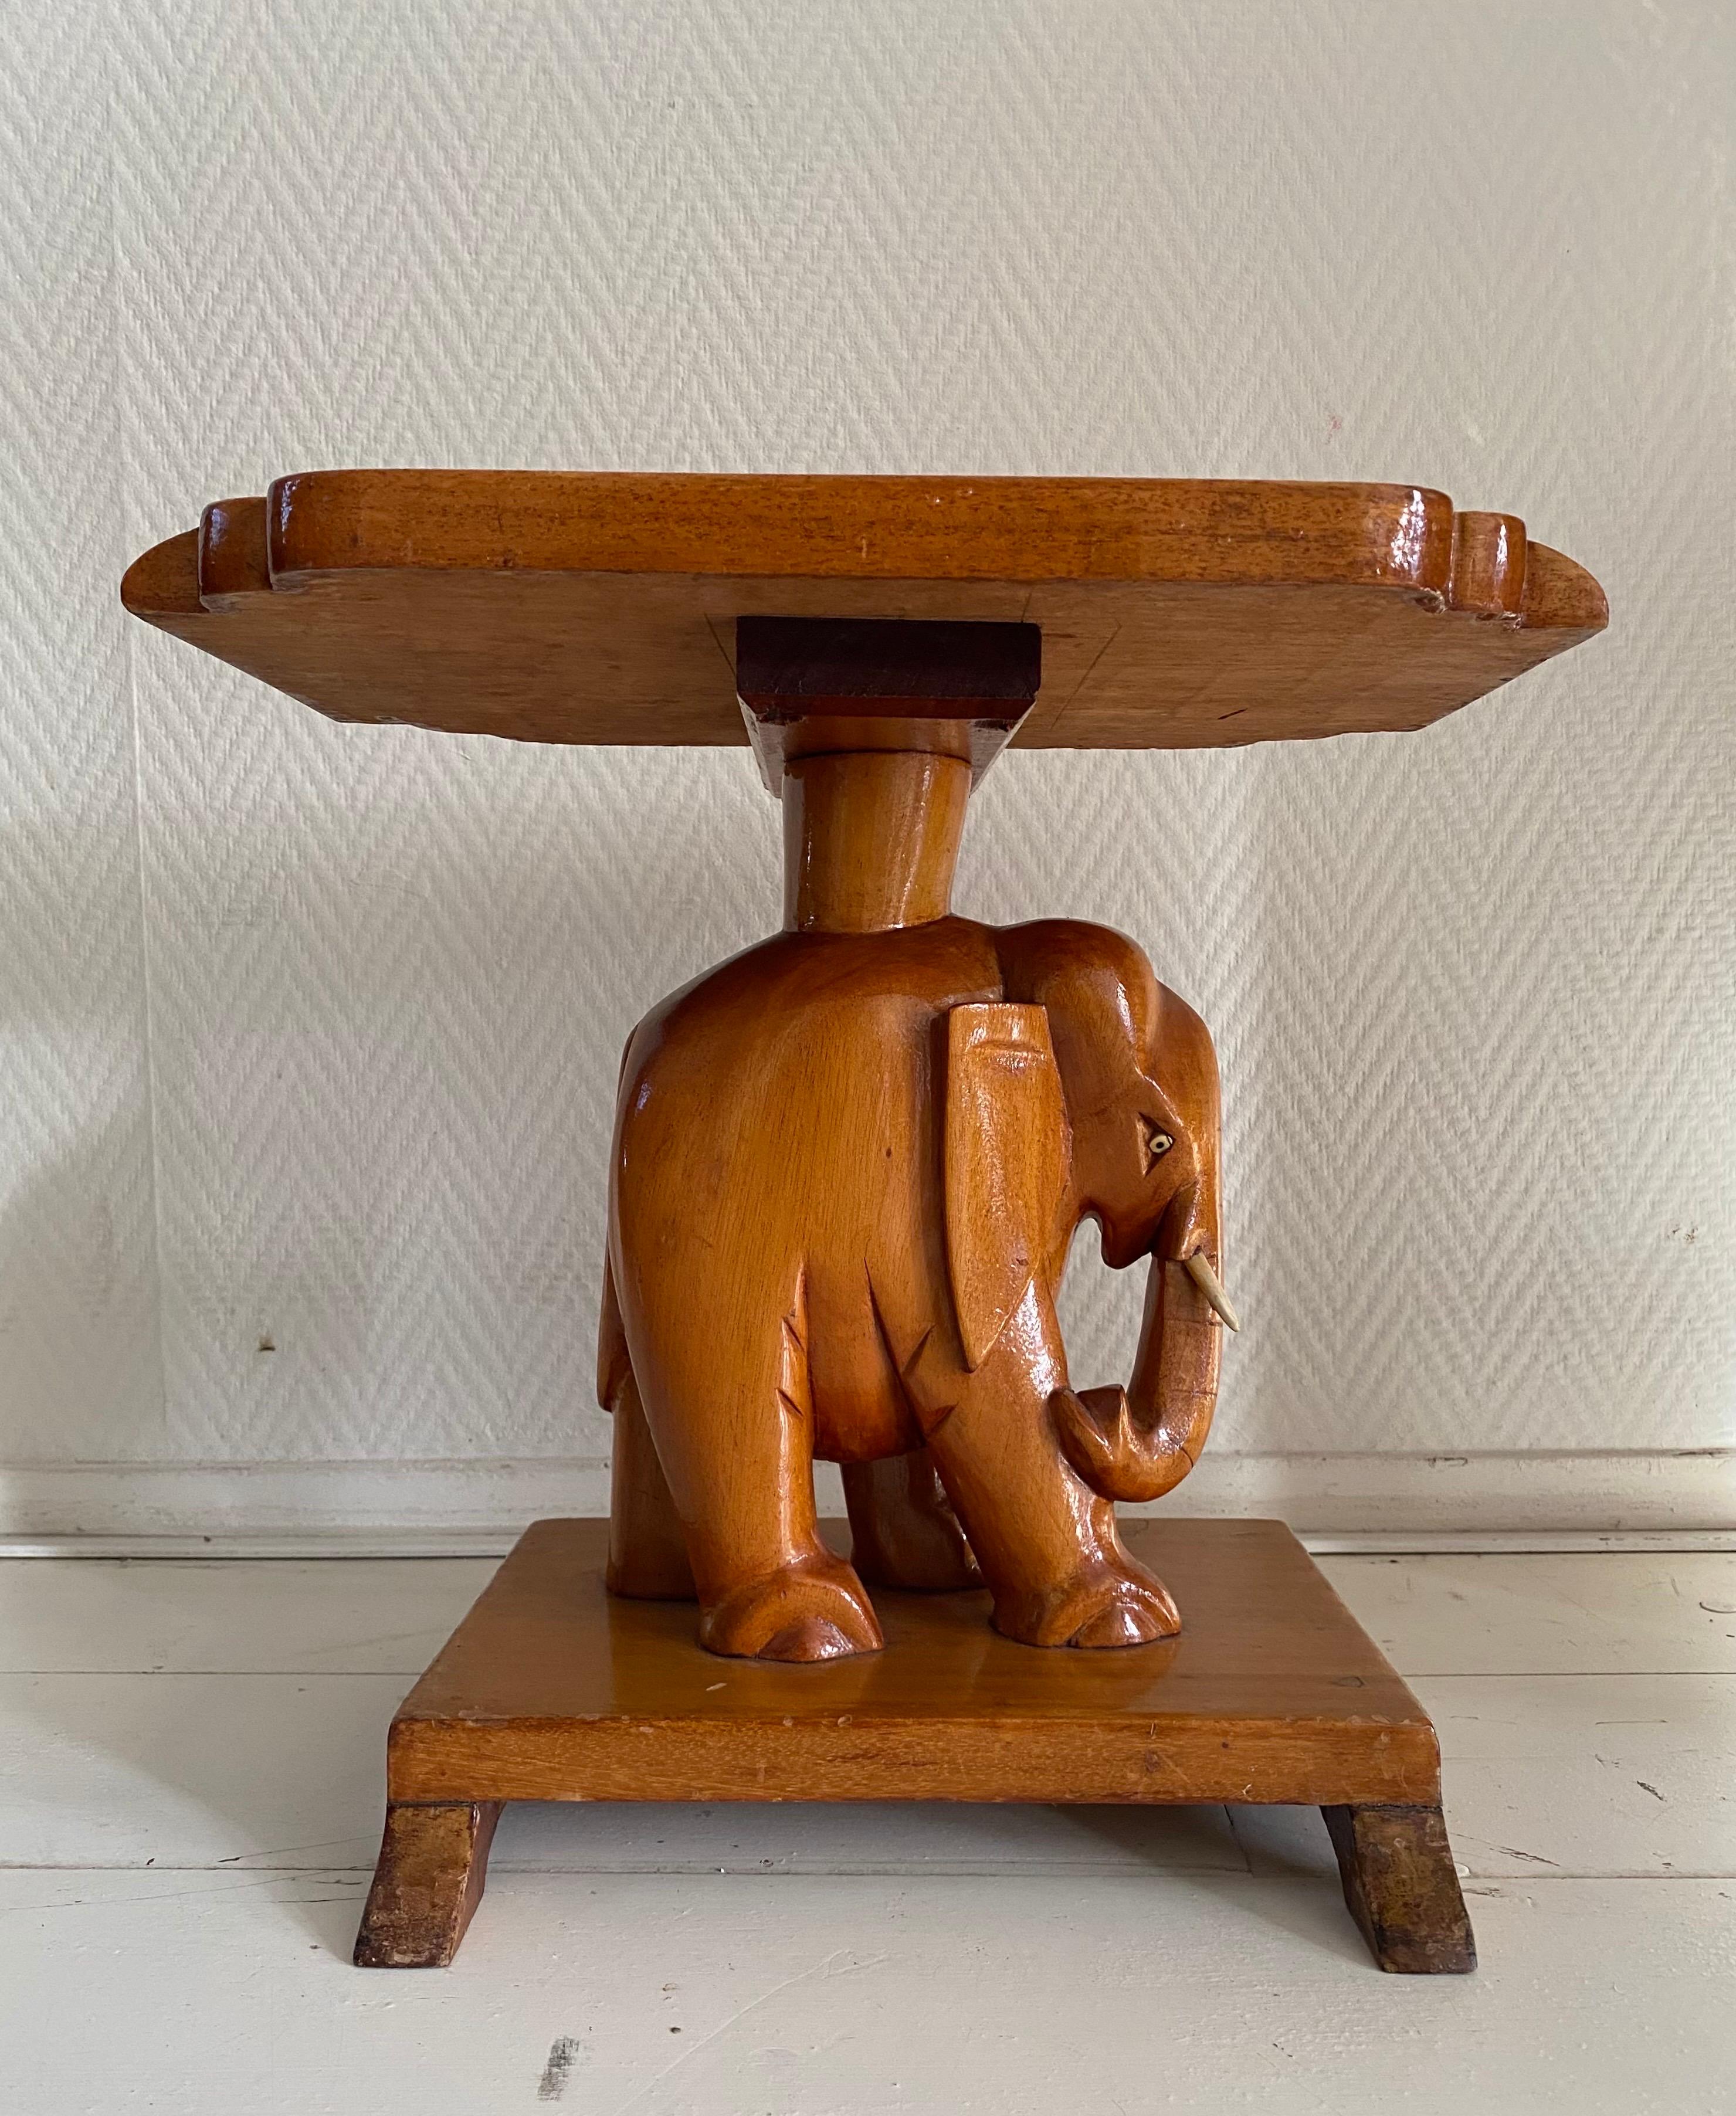 Merveilleux  Table d'appoint en forme d'éléphant, moderne et sculptée à la main.
La table a été fabriquée en bois de teck et laquée.  Il reste en bon état vintage avec quelques signes d'âge et d'utilisation, voir les photos. Superbe style bohème !